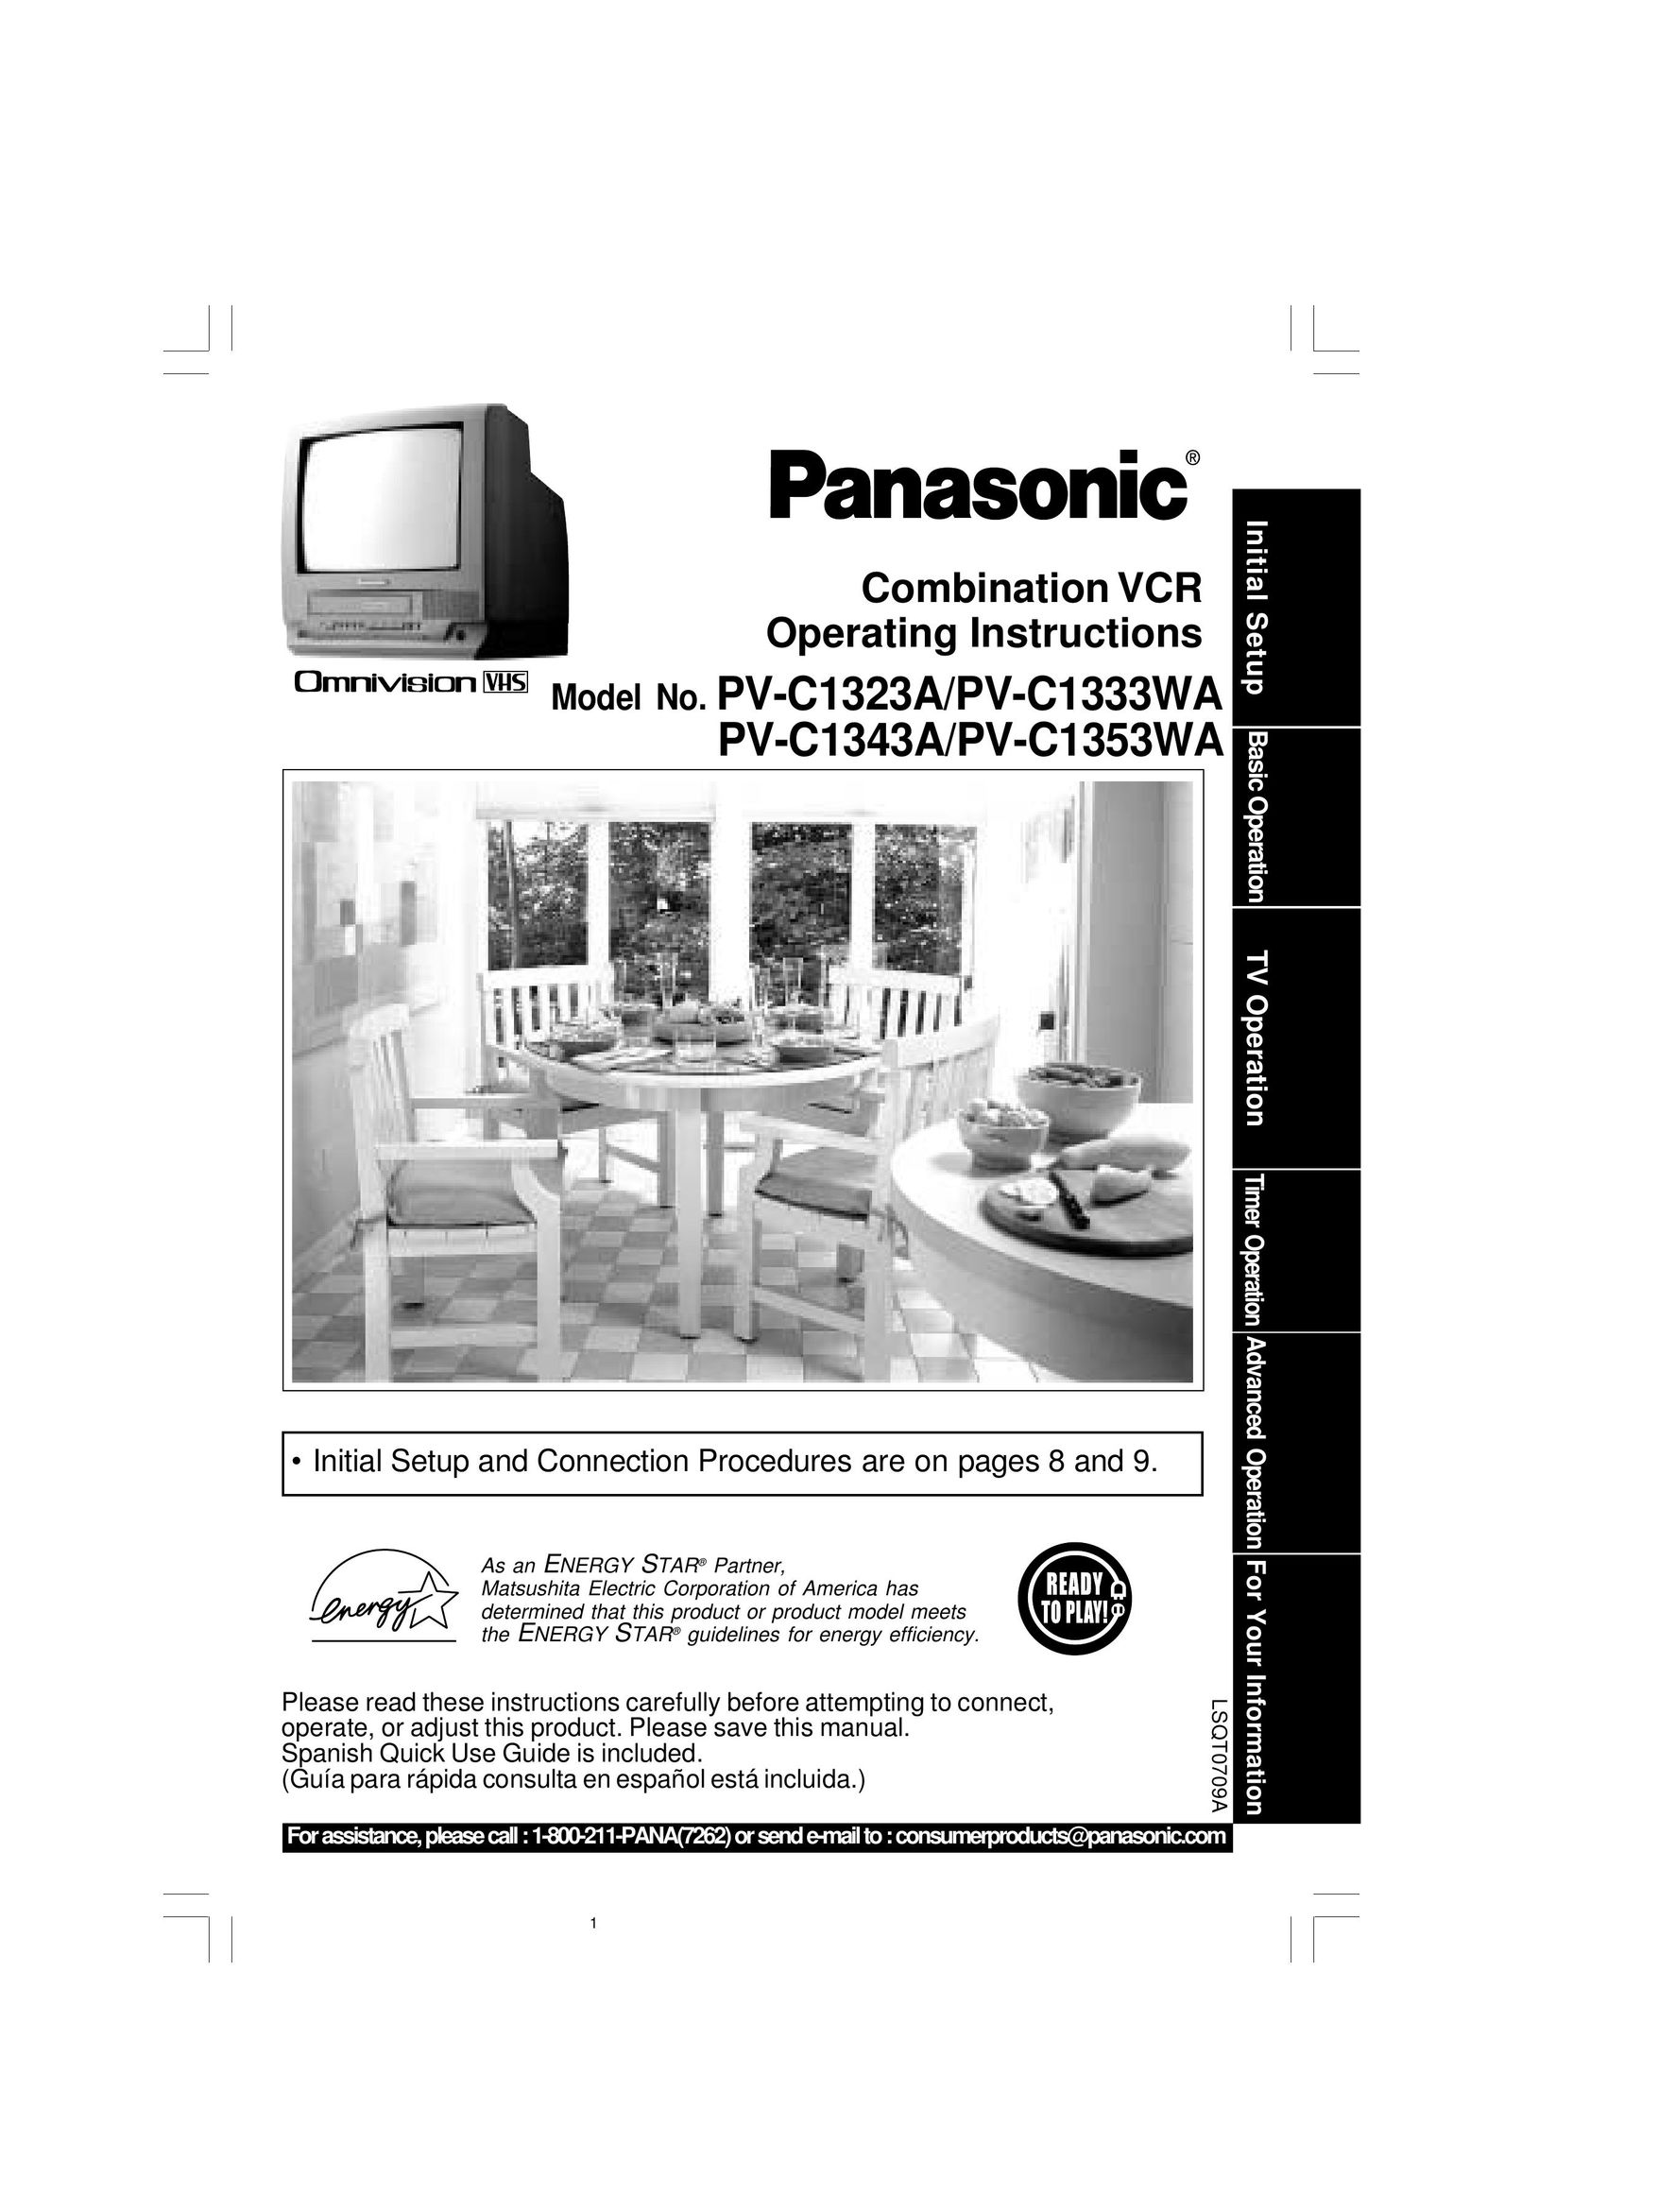 Panasonic PV-C1343A TV VCR Combo User Manual